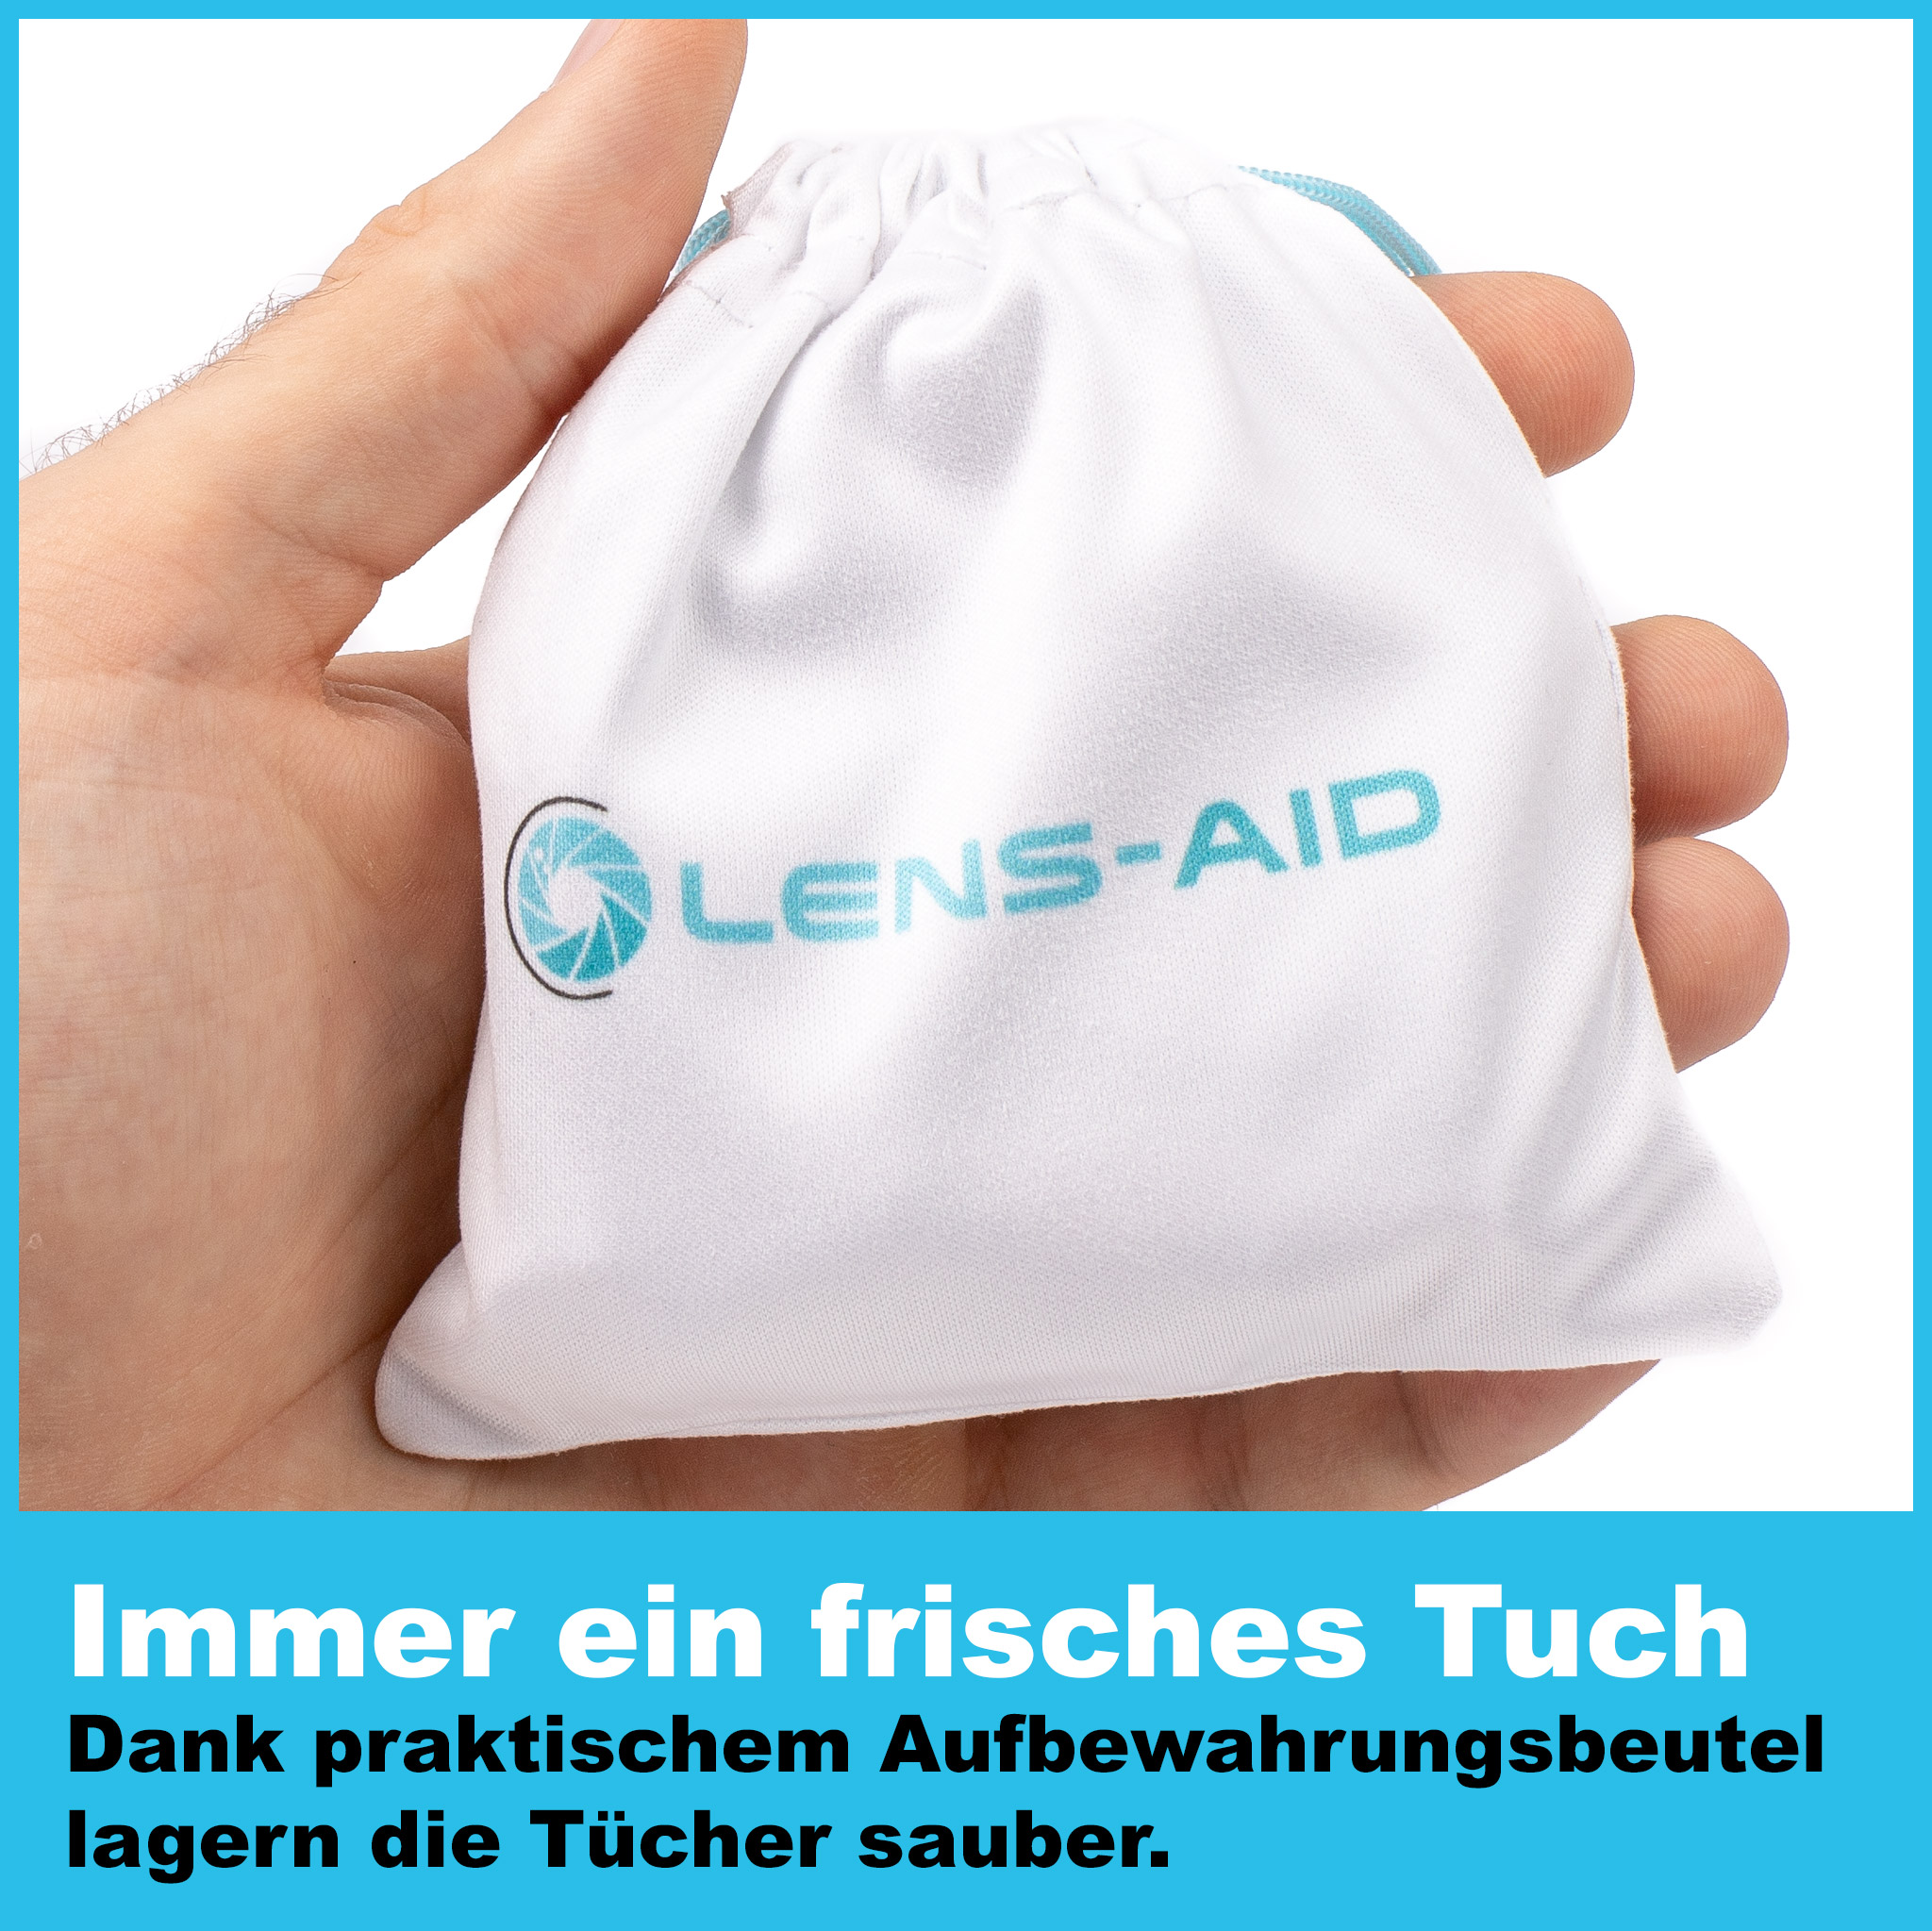 LENS-AID 10er Set Mikrofaser-Reinigungstücher, Reinigungstuch, für Brille passend & Smartphone Blau/Weiß, Objektiv